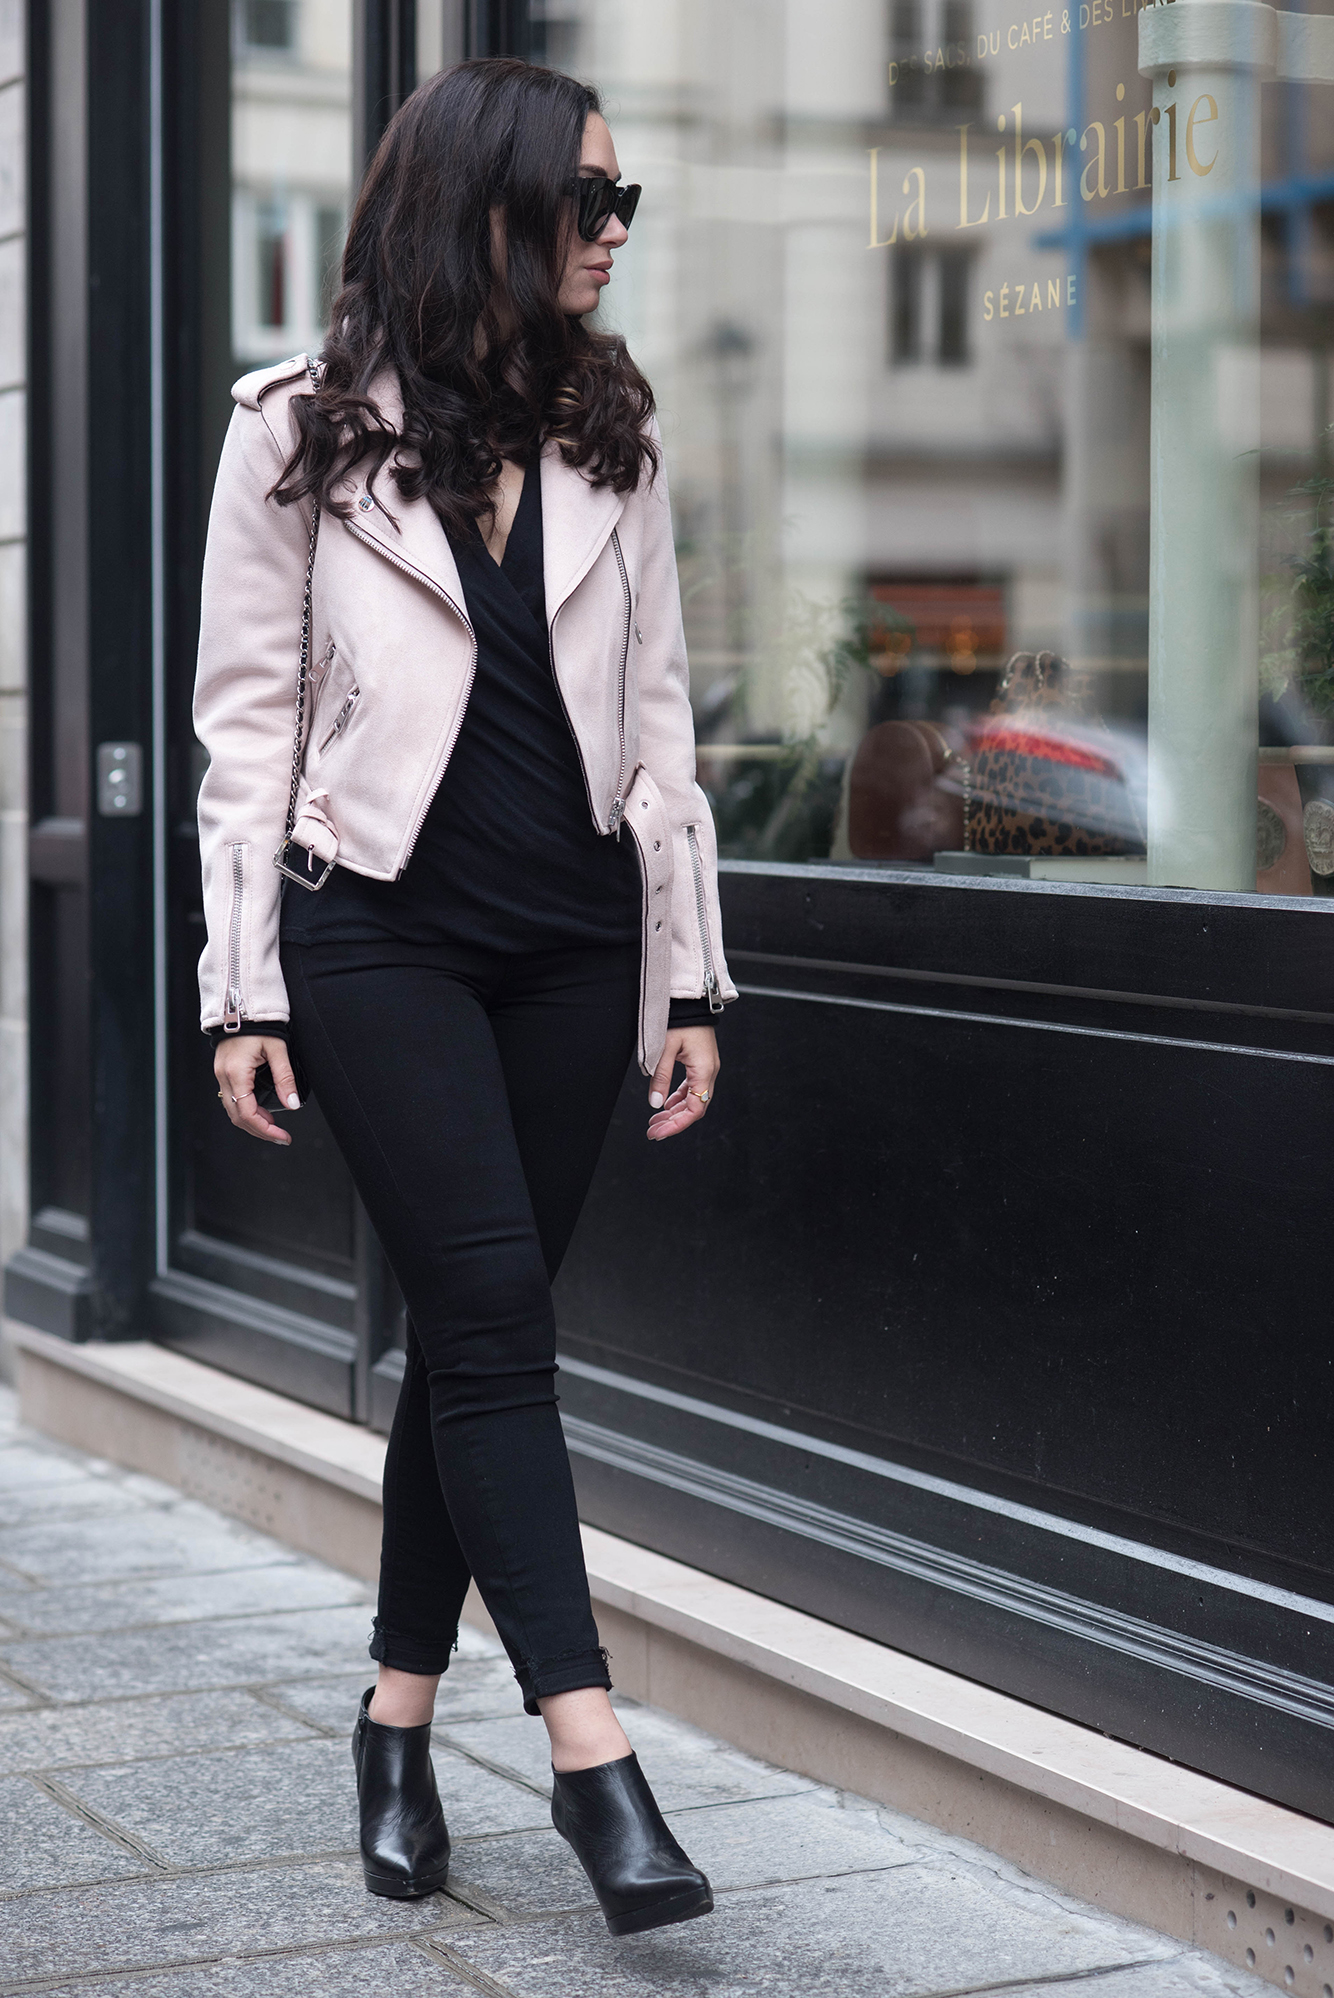 Pink Leather Jacket, Shopbop Fashion